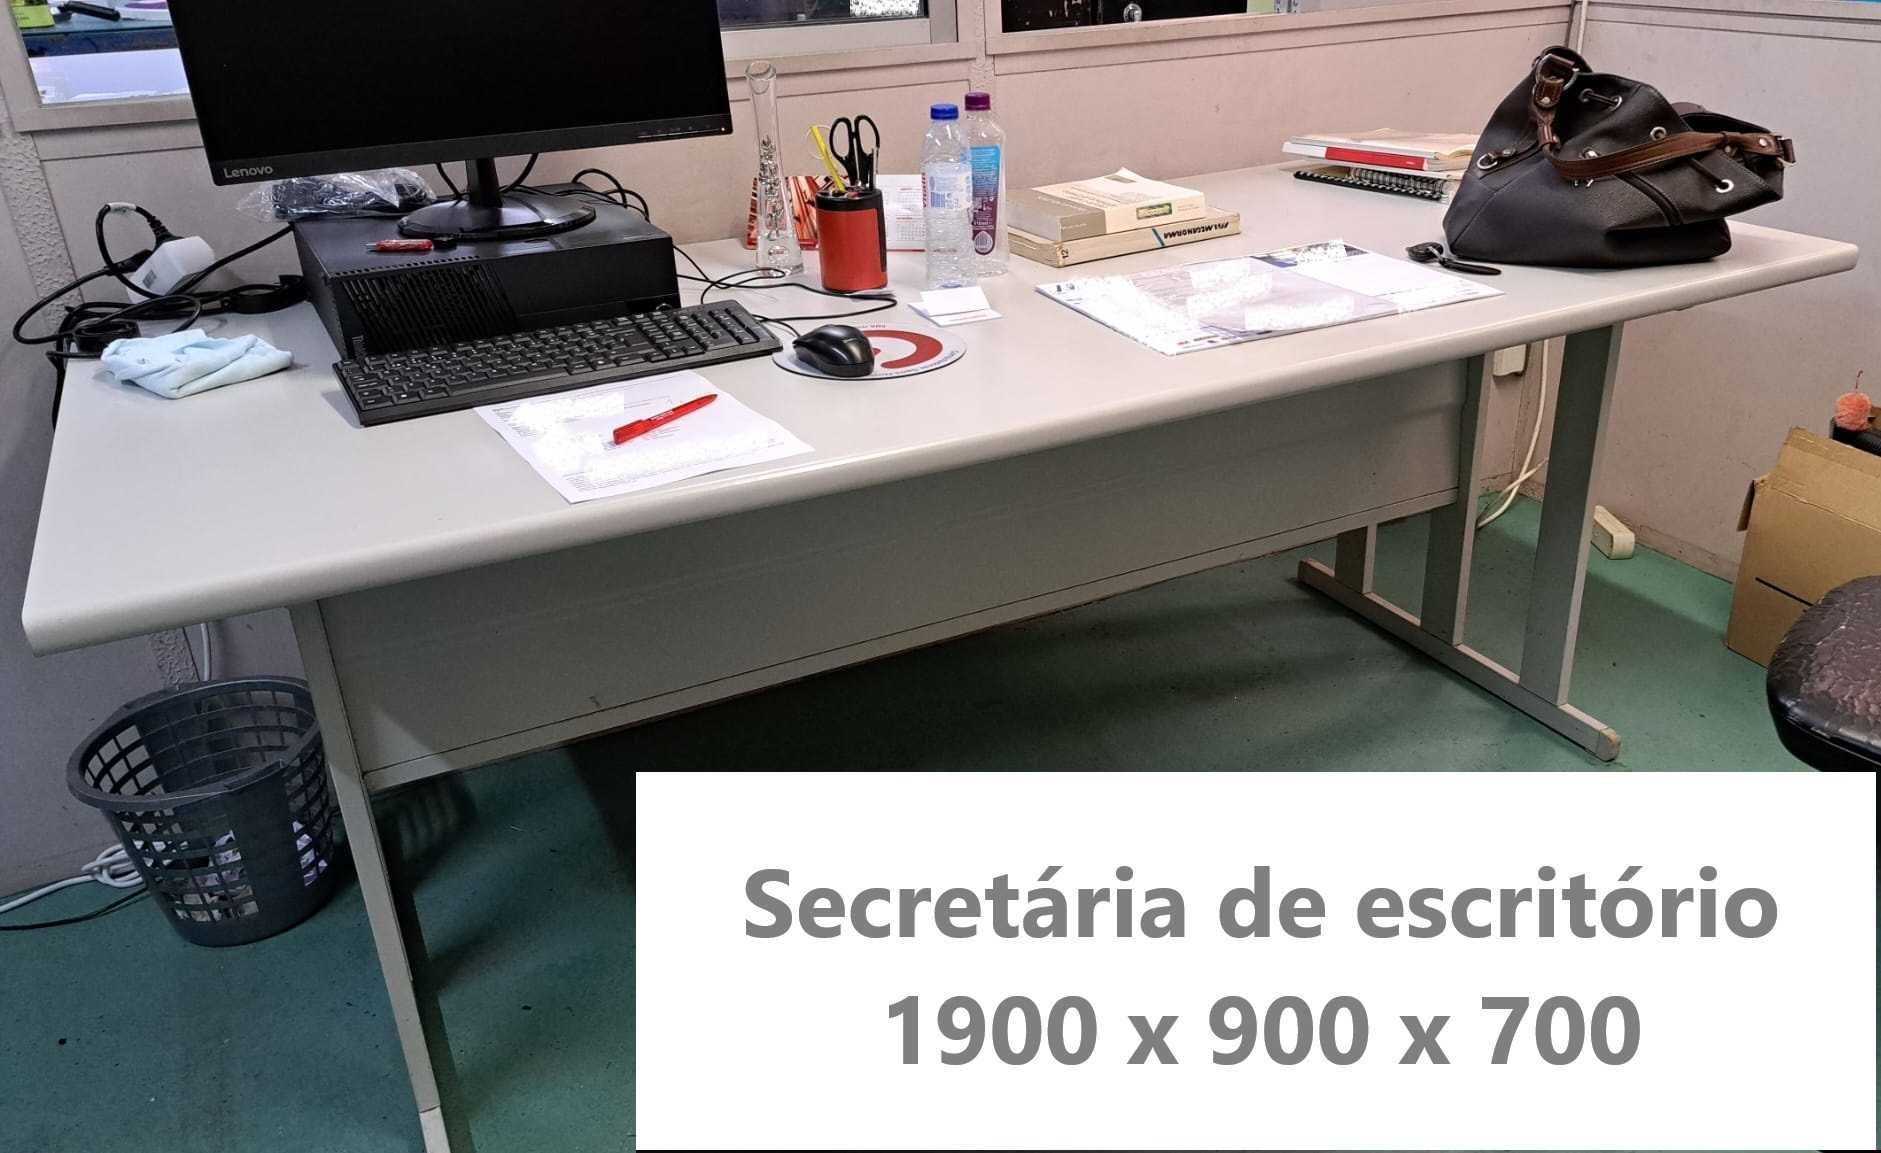 Secretária de escritório 1900x900x700 (bom estado)